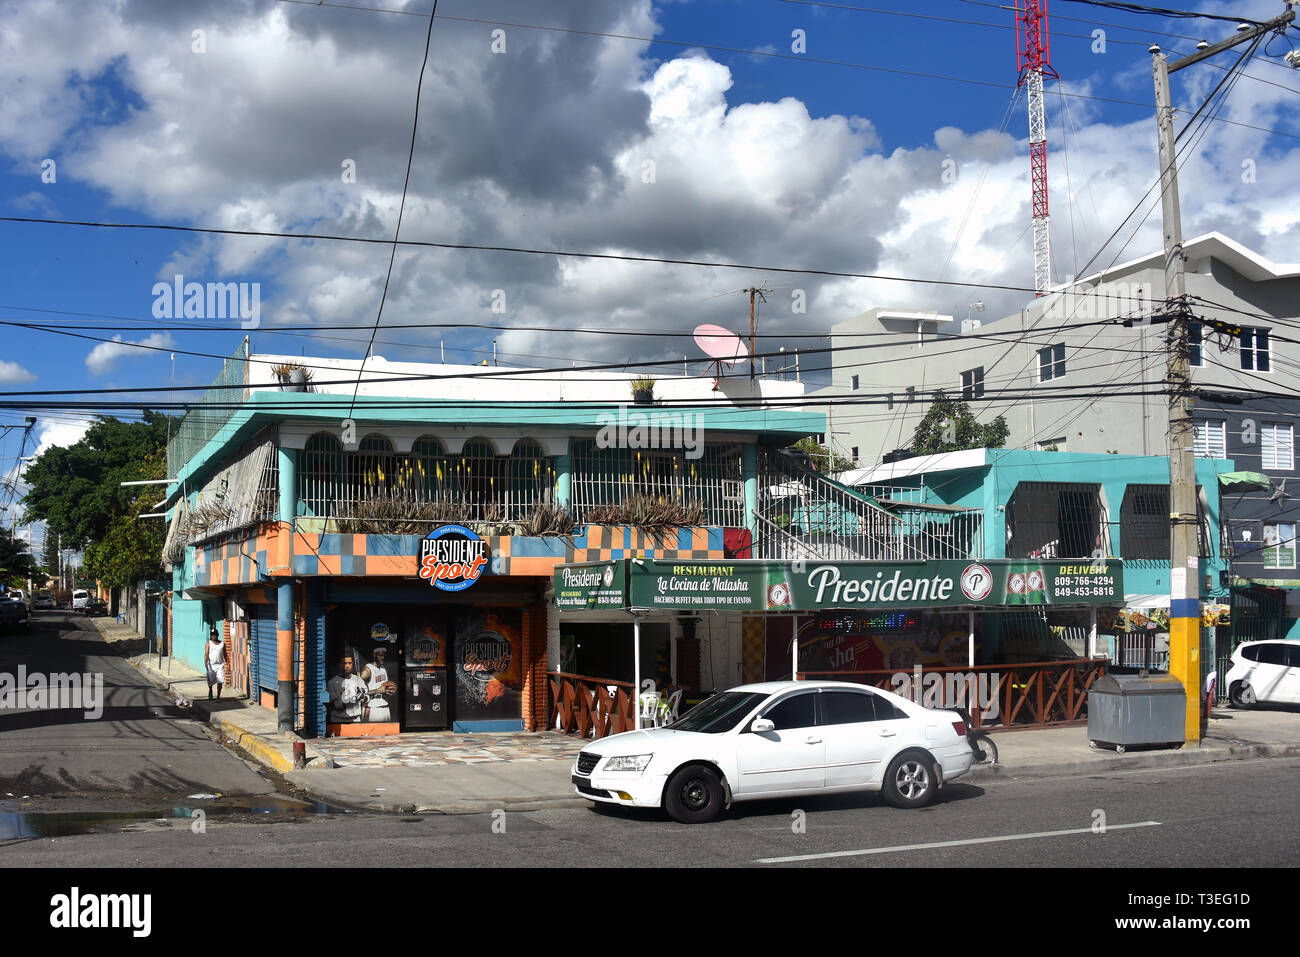 Santo Domingo, Repubblica Dominicana - Febbraio 7, 2019: ristorante La Cocina de Natascia in Santo Domingo Este dotato di segnaletica per il popolare Dominic Foto Stock